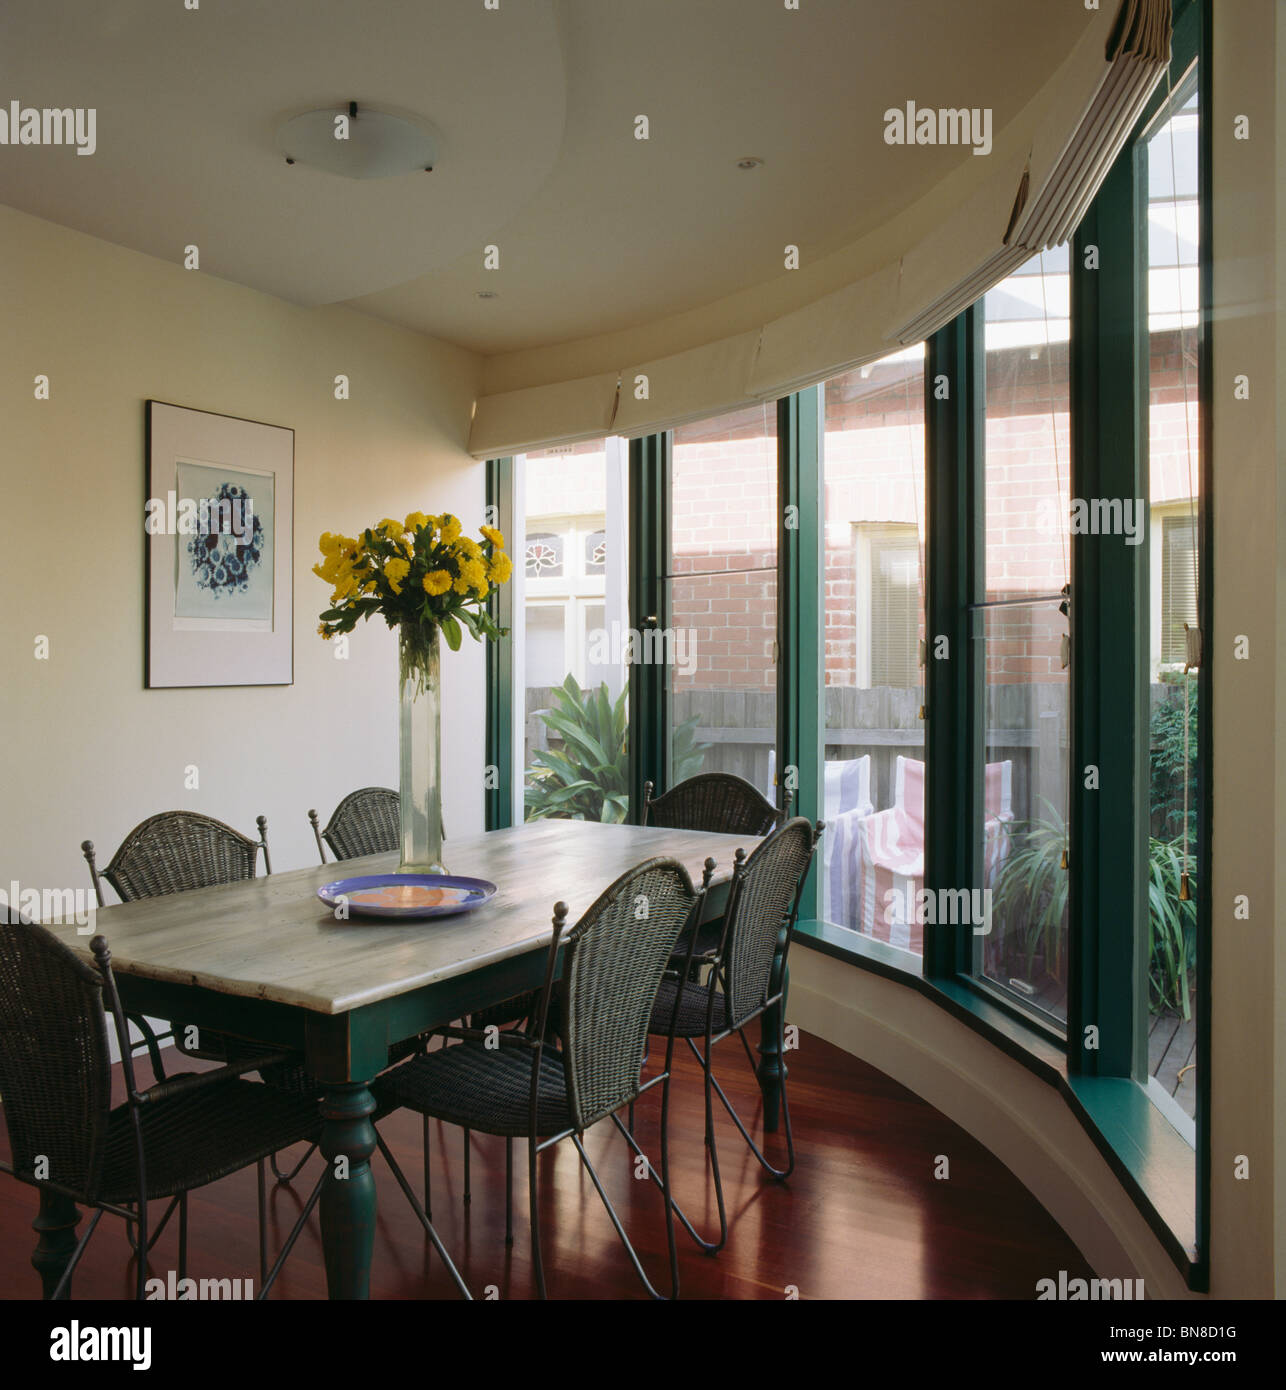 Table en marbre et des chaises en osier dans la salle à manger moderne avec des fenêtres avec cadres peints en vert Banque D'Images